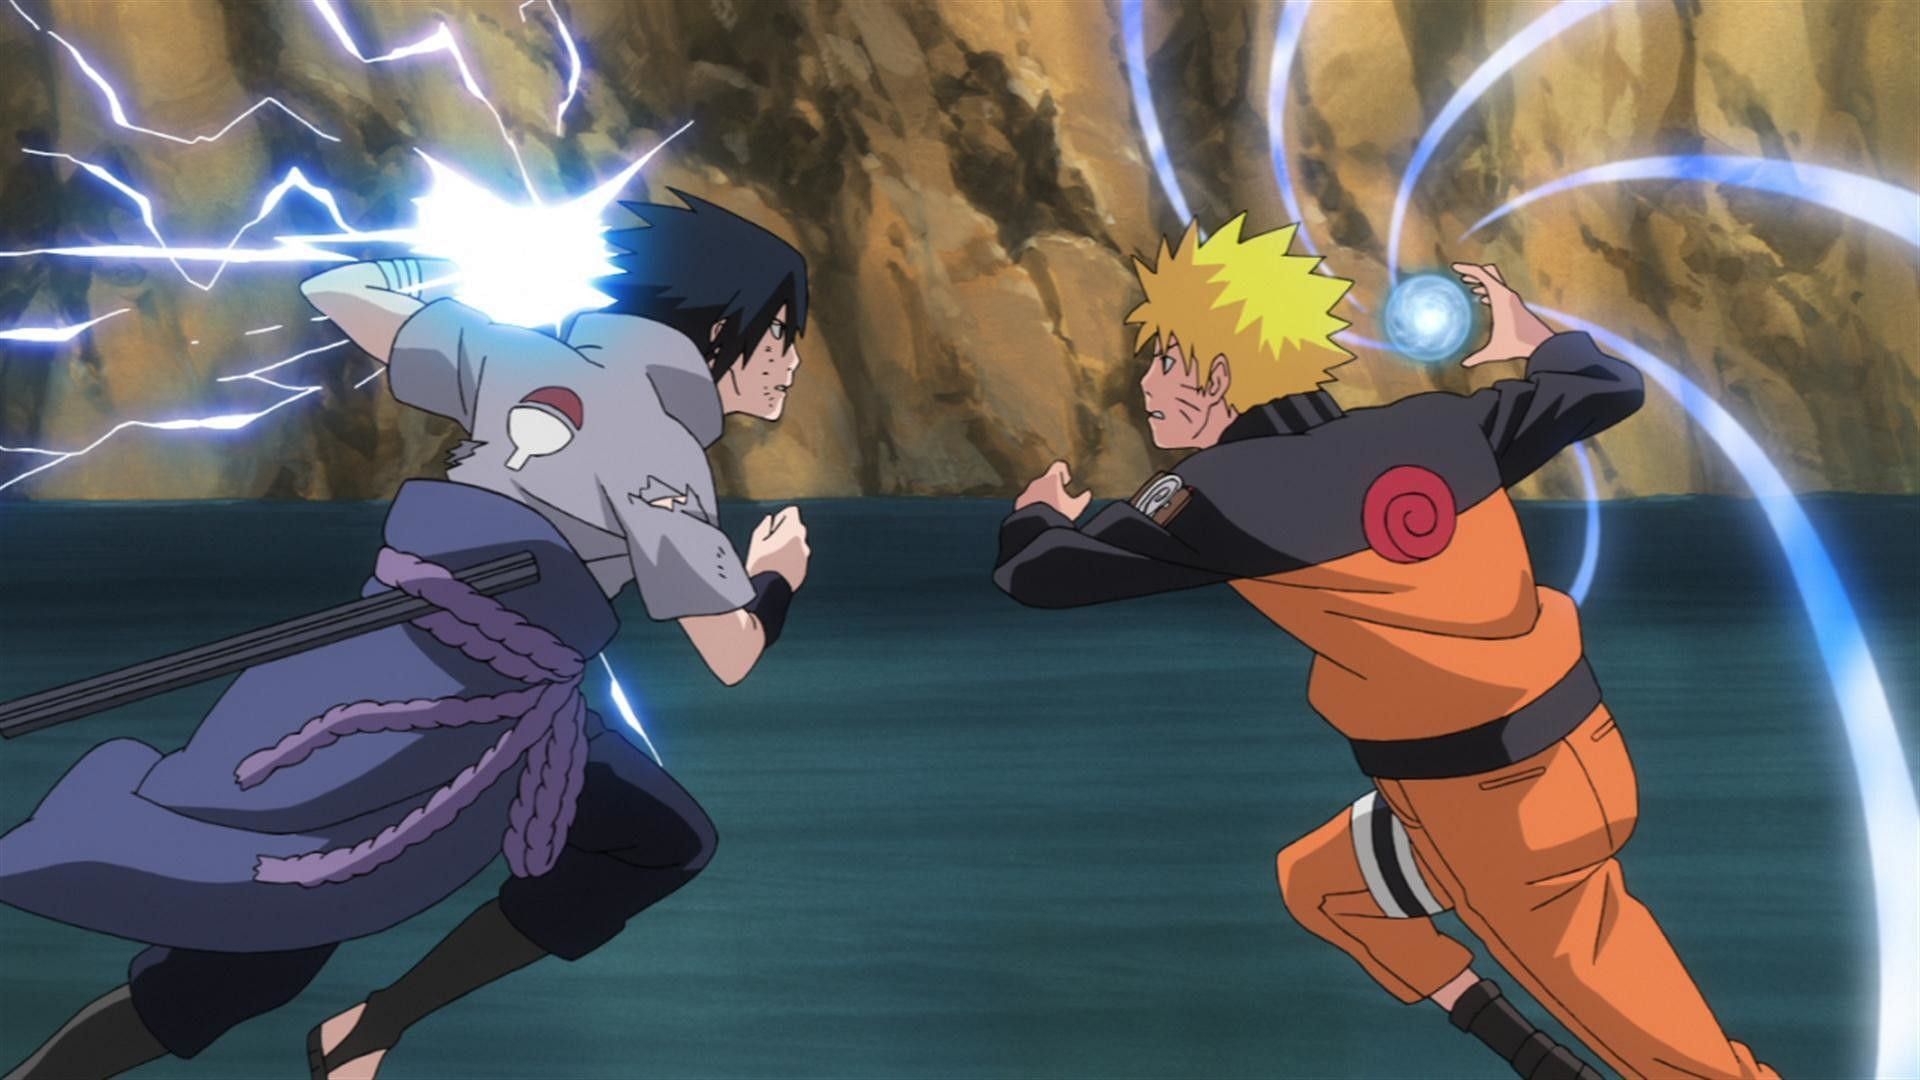 Naruto and Sasuke (Image via Naruto)